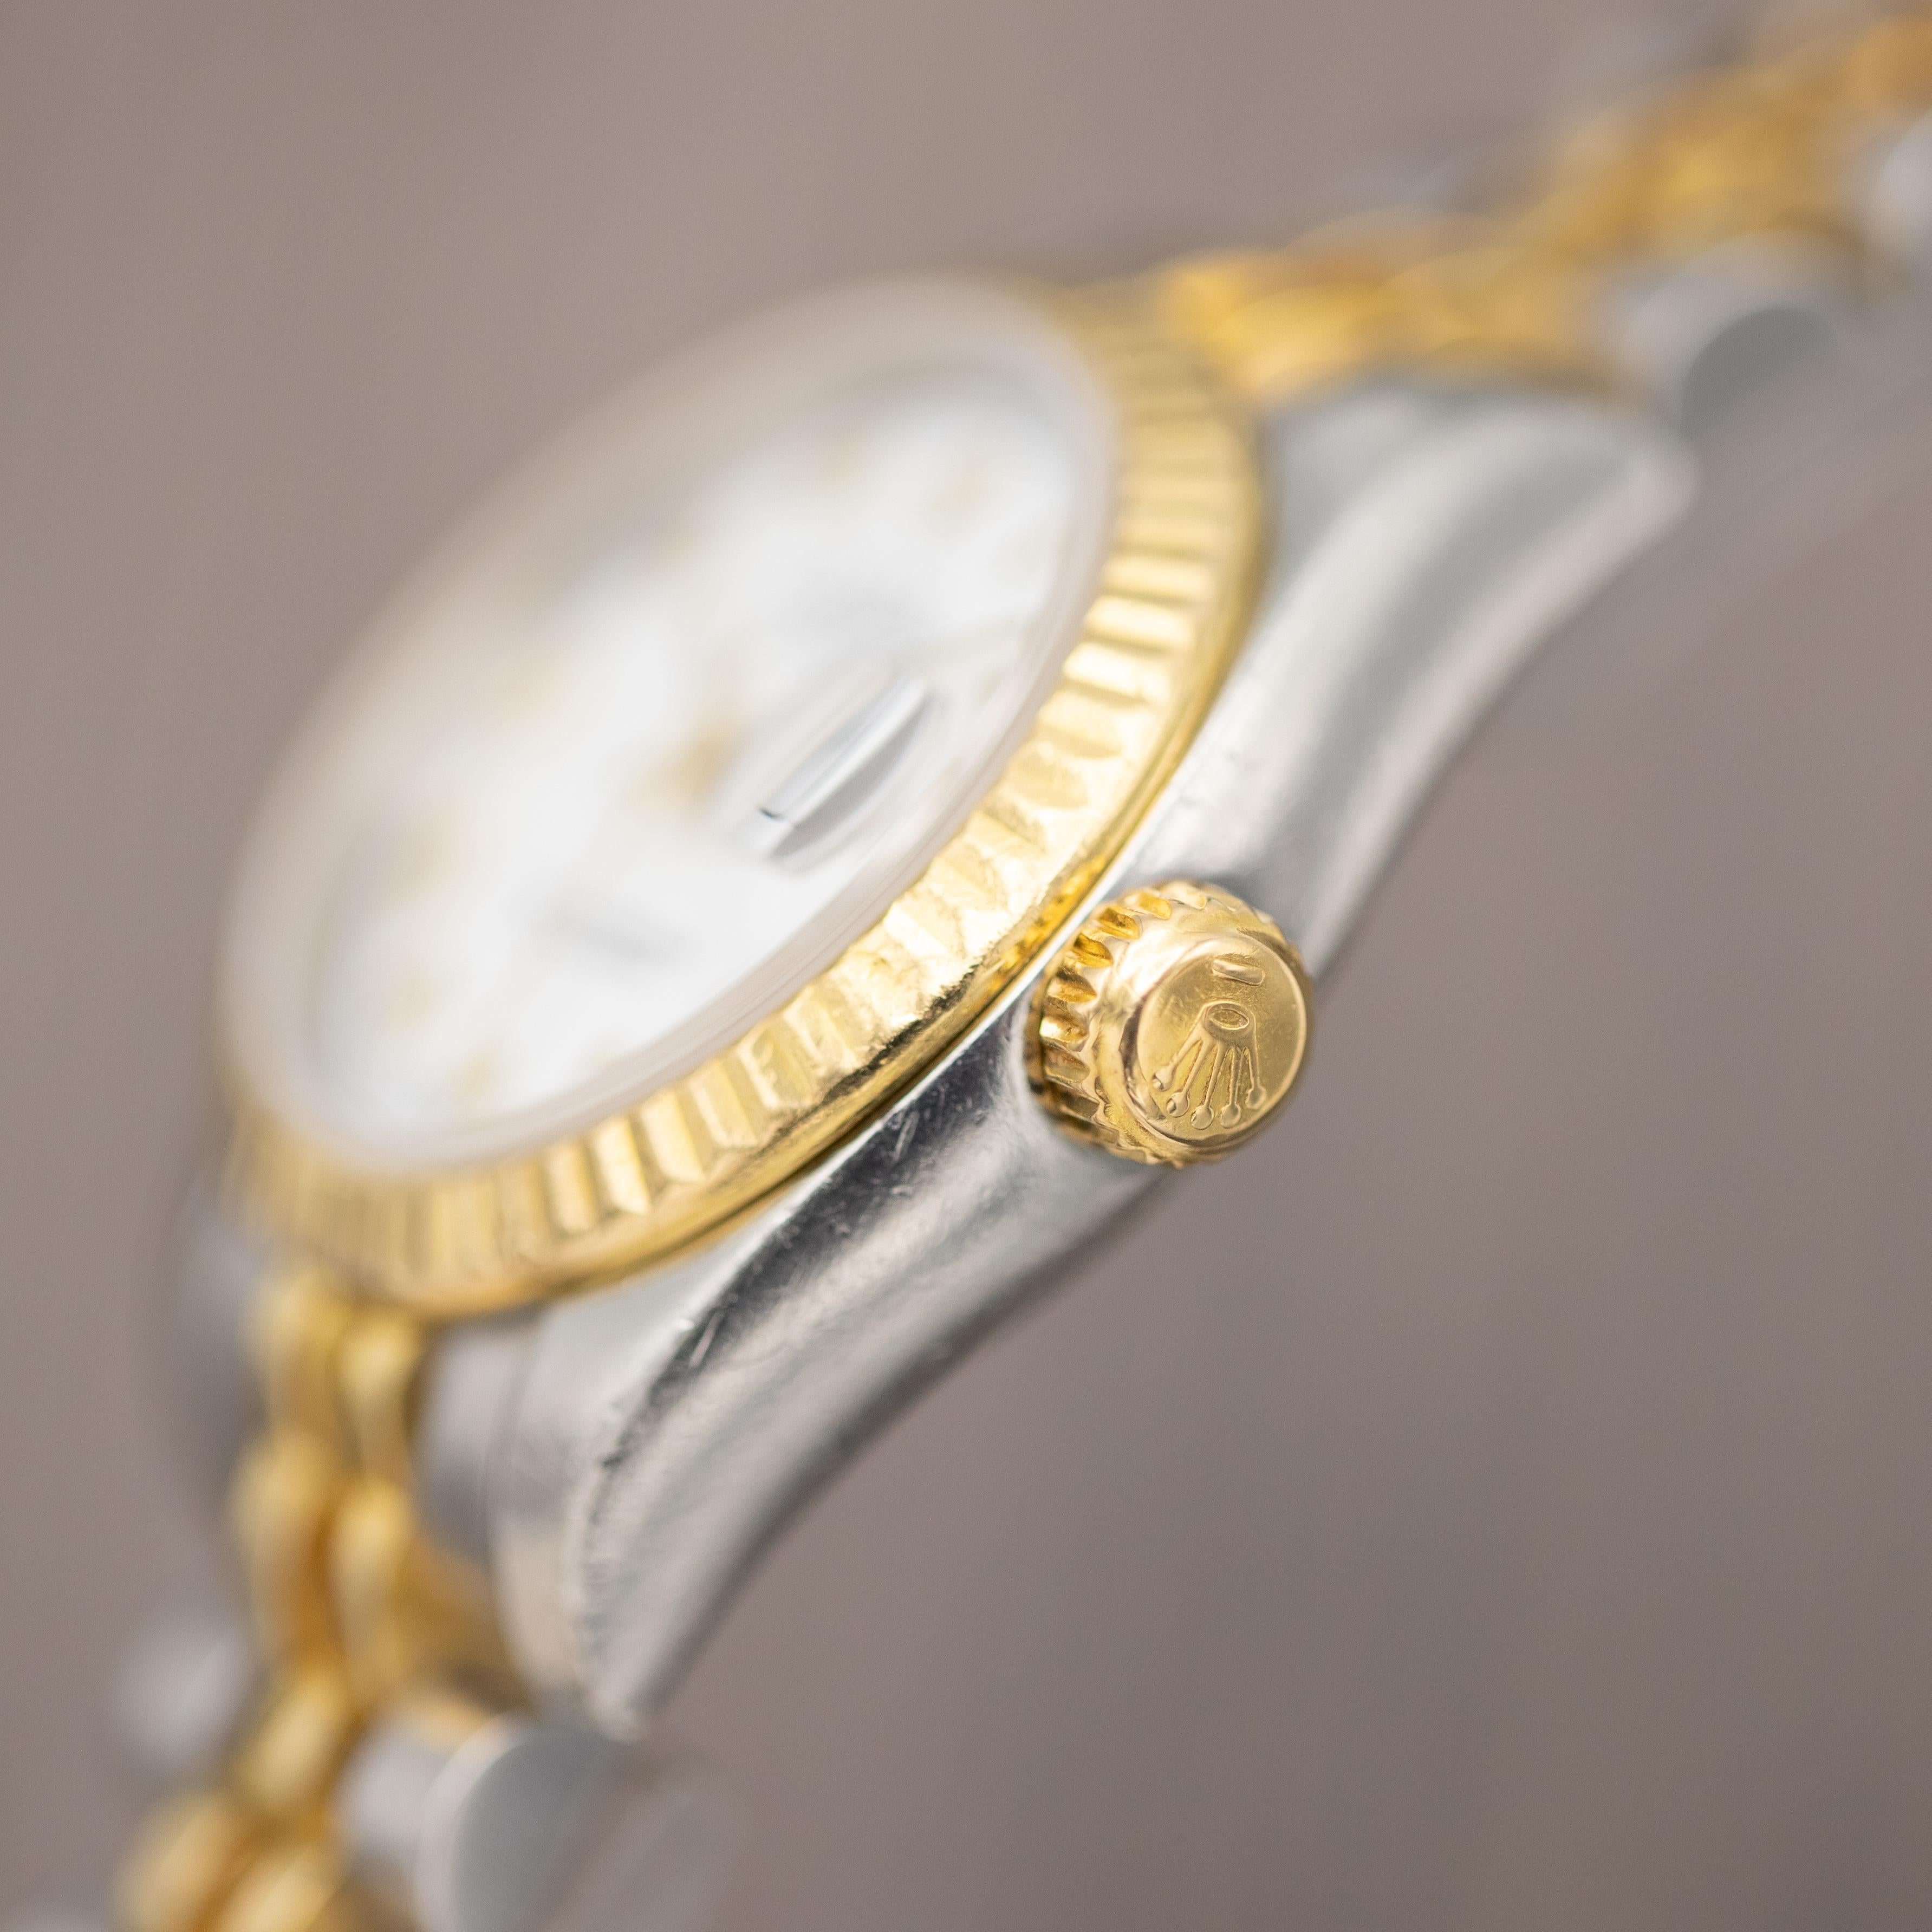 Rolex Oyster Perpetual Lady Datejust automatique - Montre vintage pour femmes - Jubilee 3